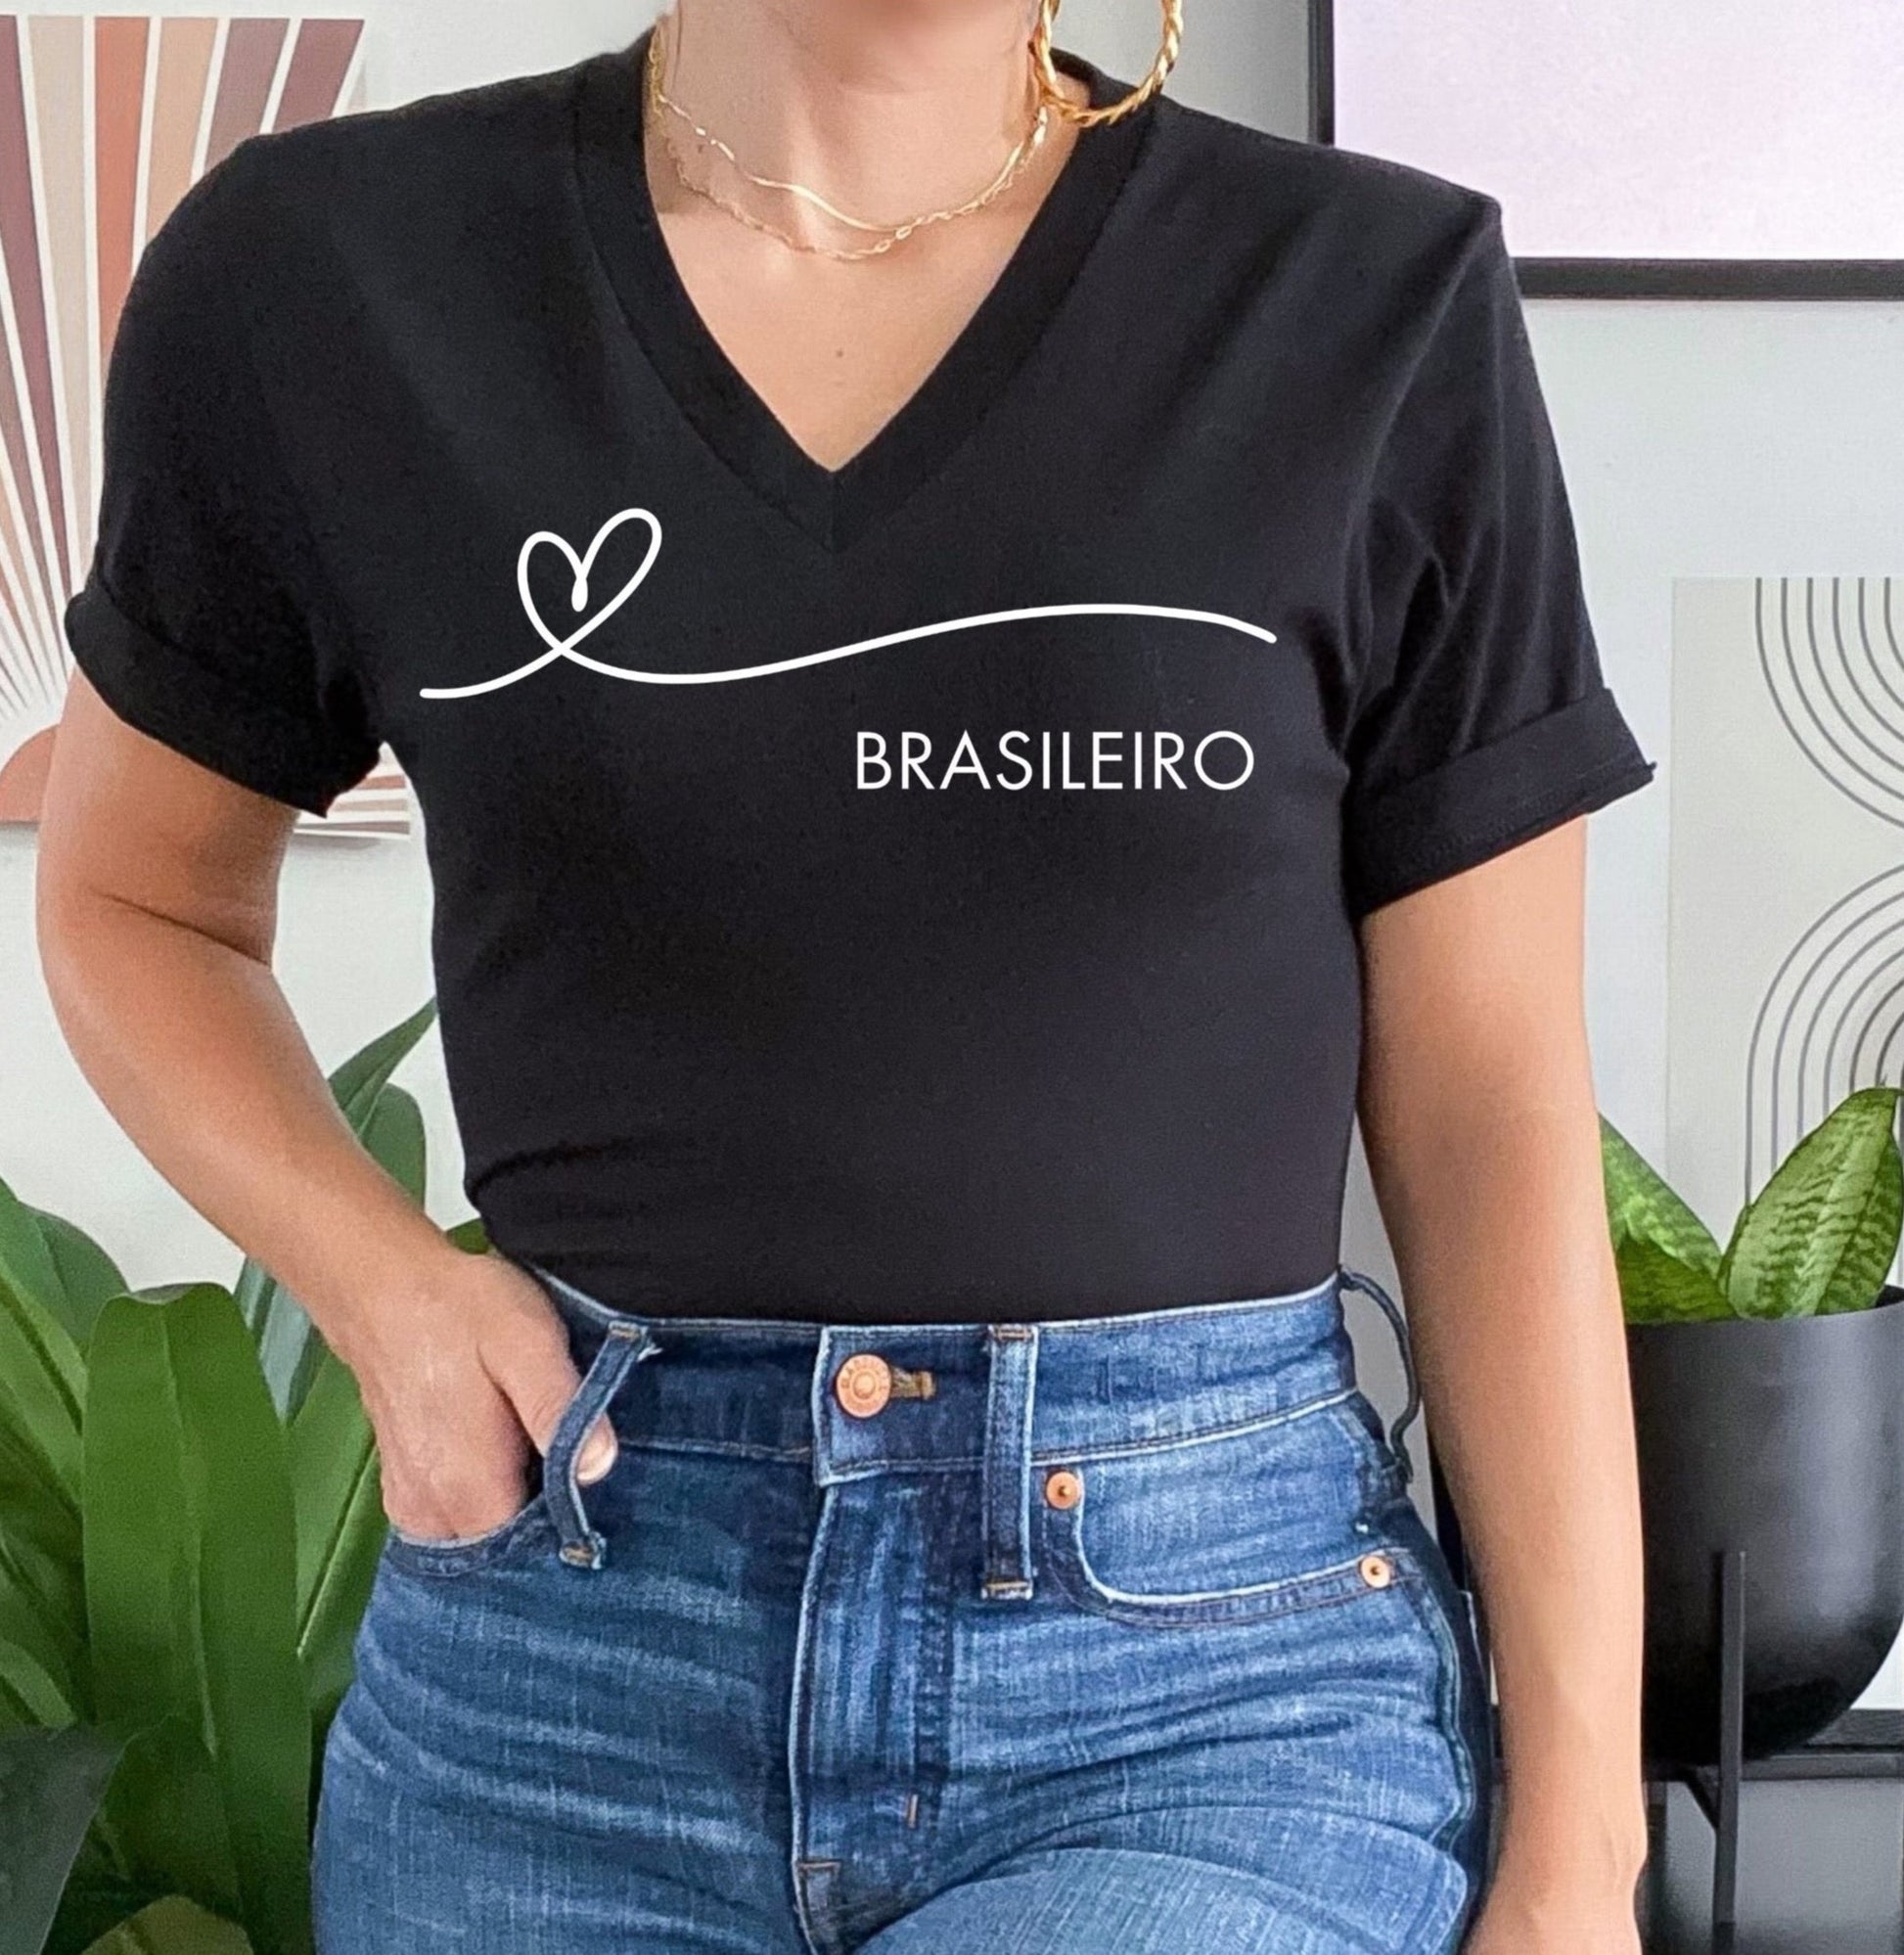 Coraçāo Brasileiro Black T-Shirt